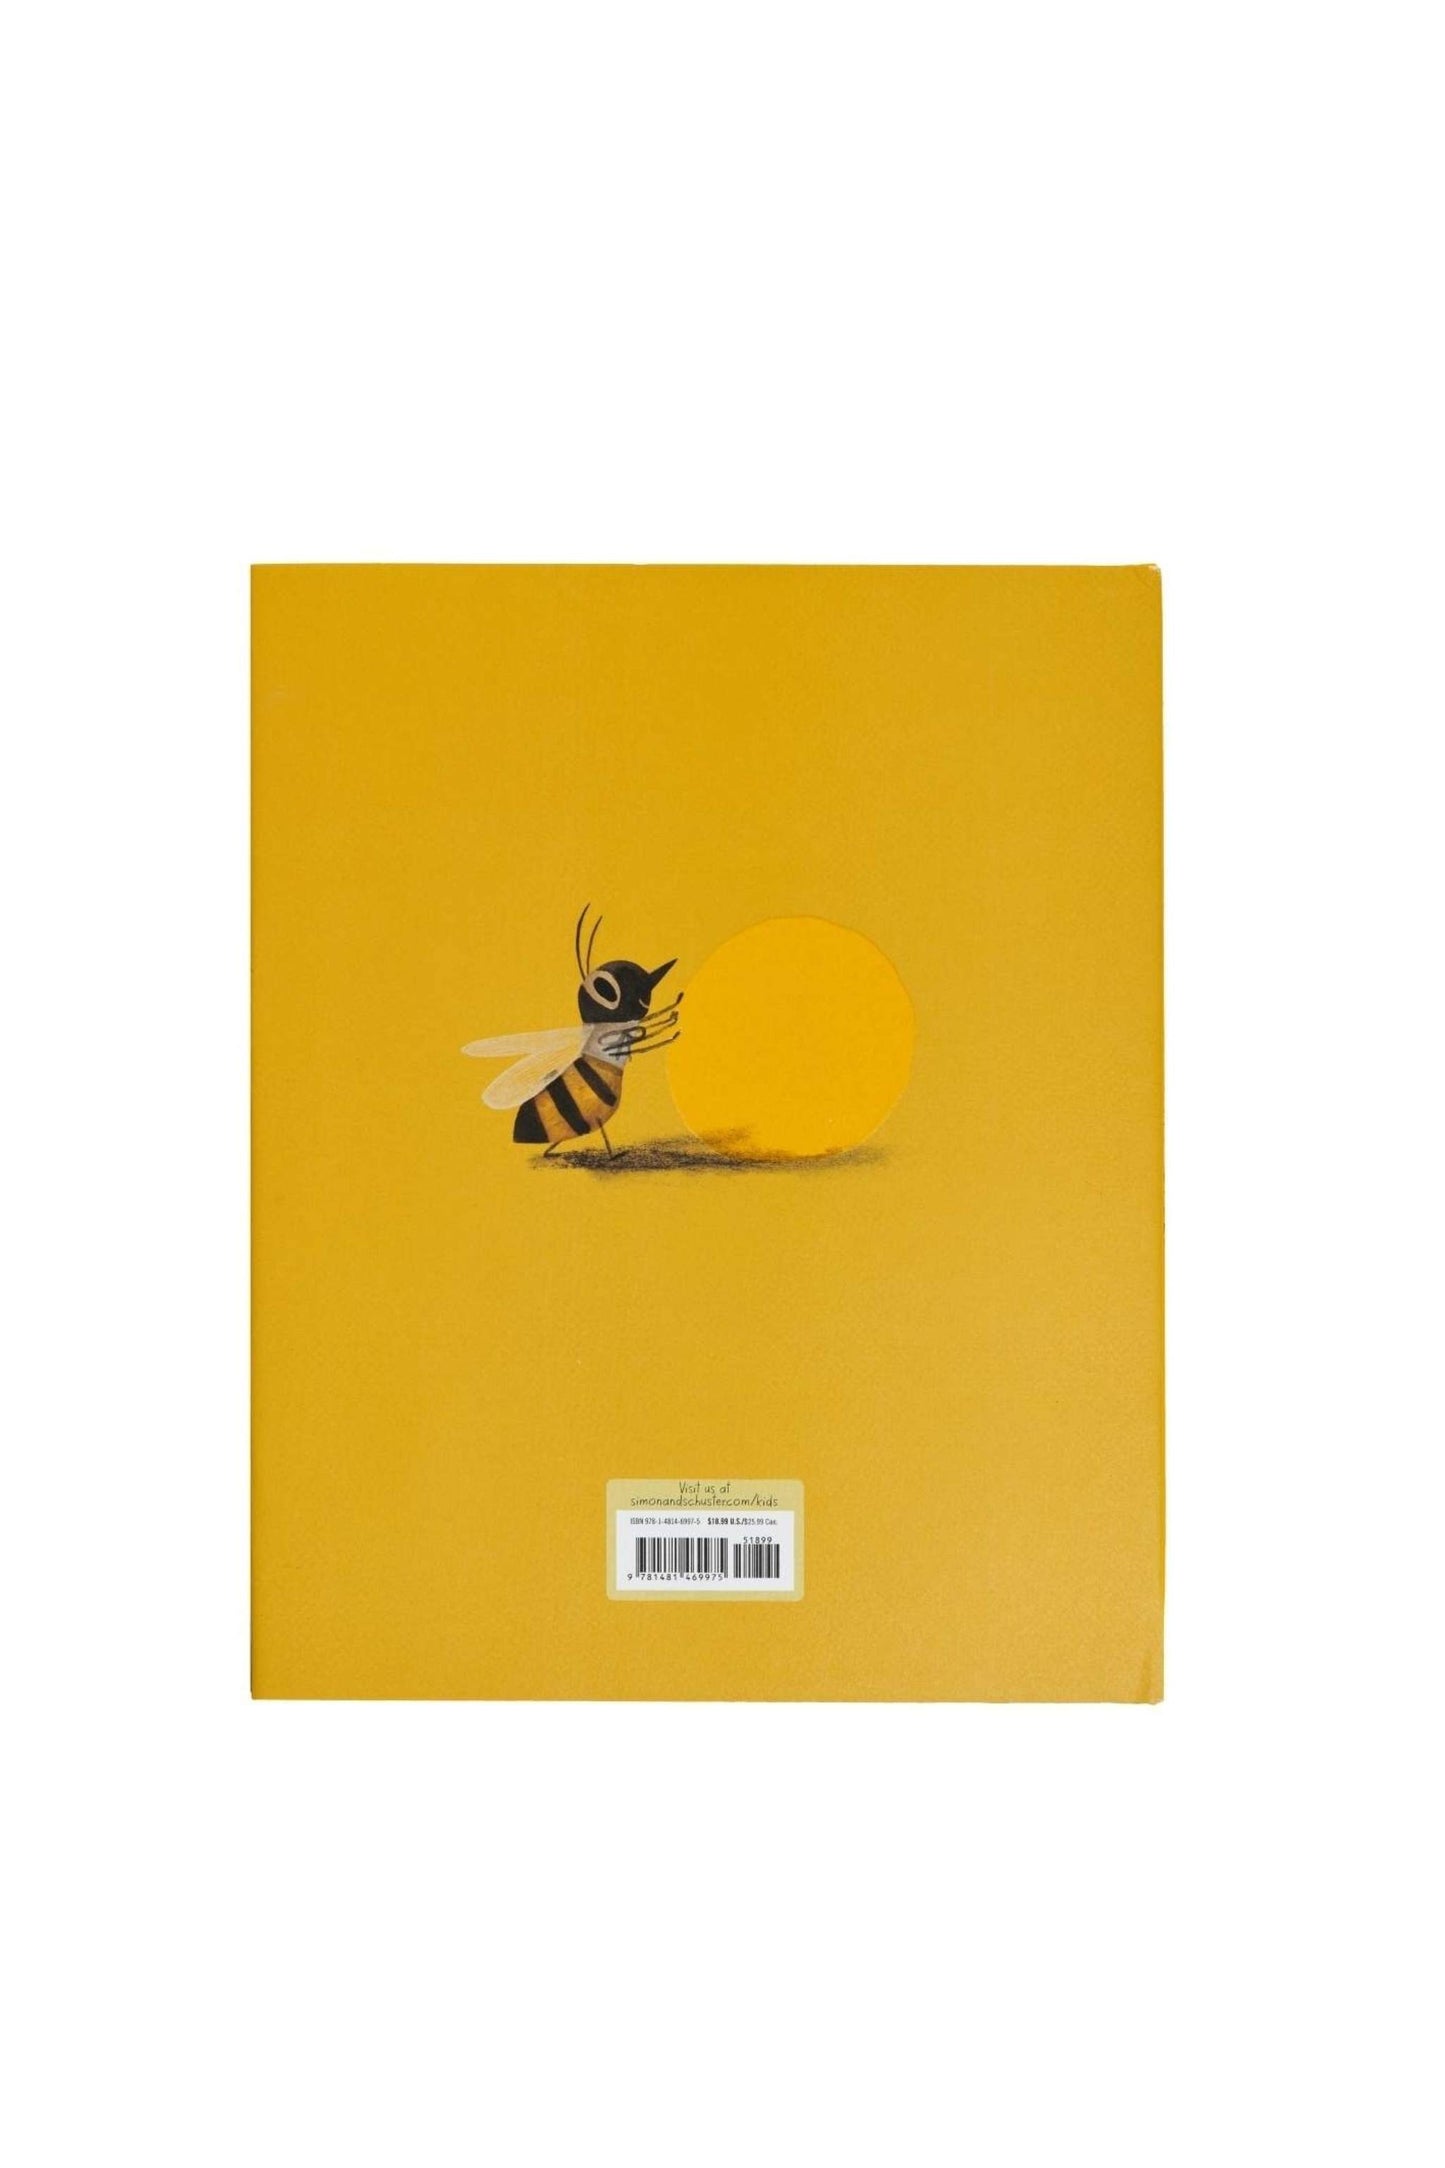 The Honeybee children's book back facing